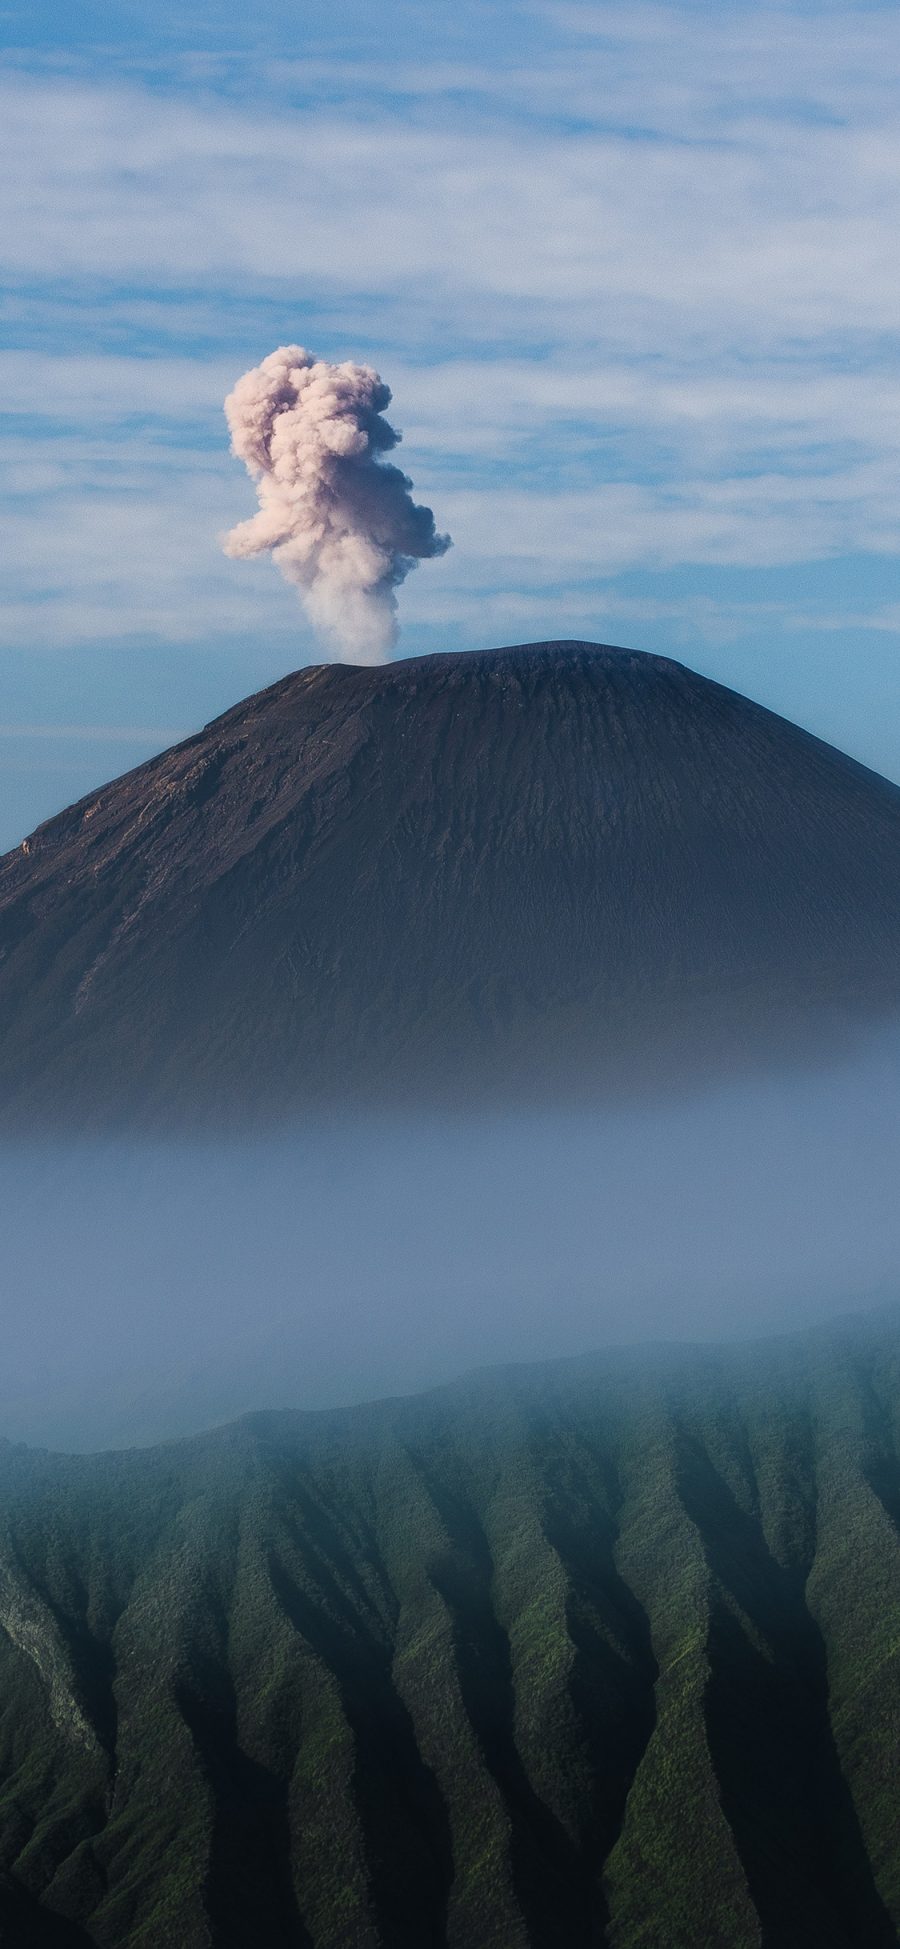 [2436×1125]远眺 山顶 云彩 火山 冒烟 苹果手机壁纸图片